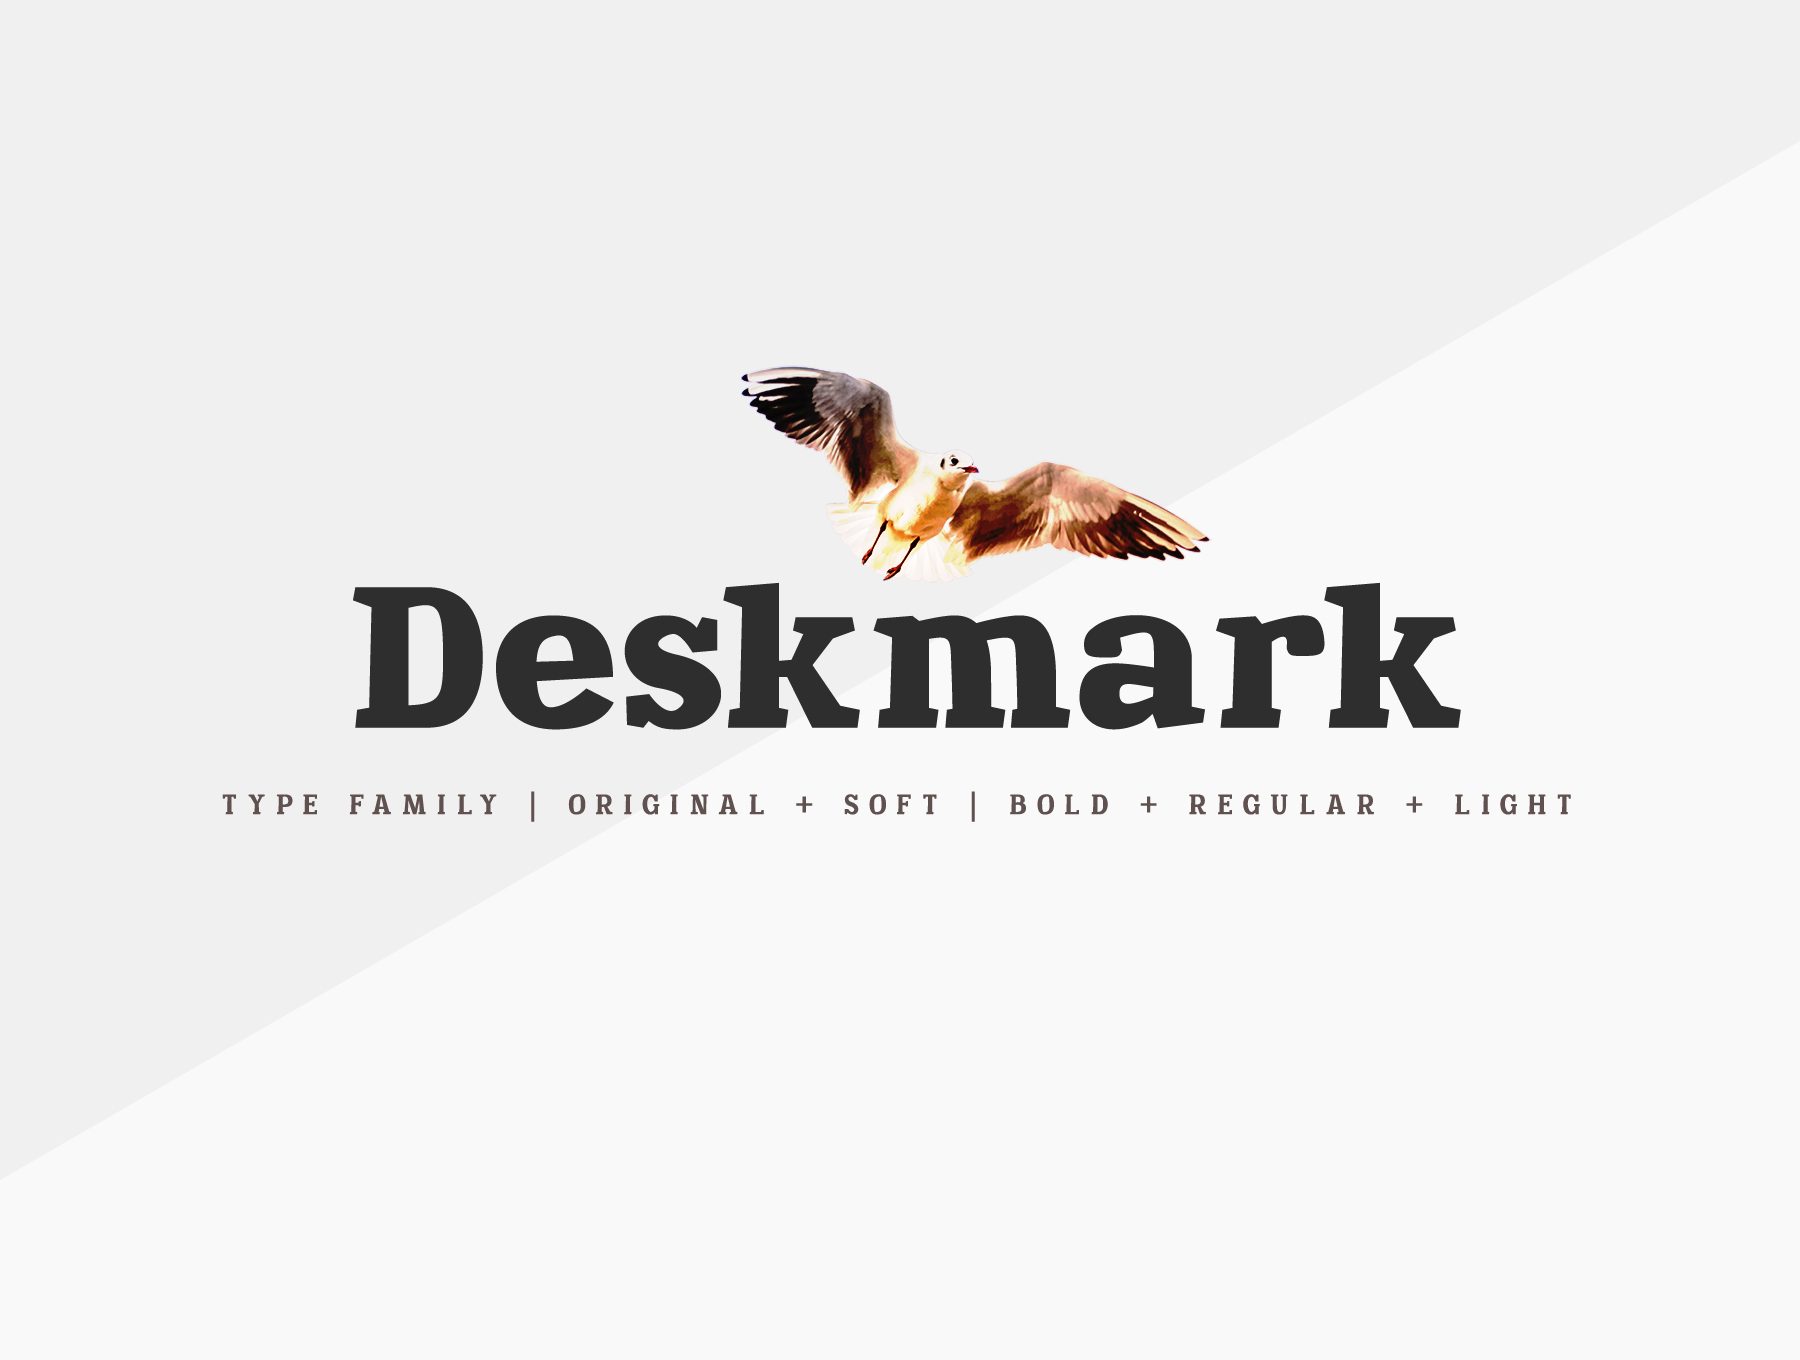 风景优美的桌面标记Deskmark